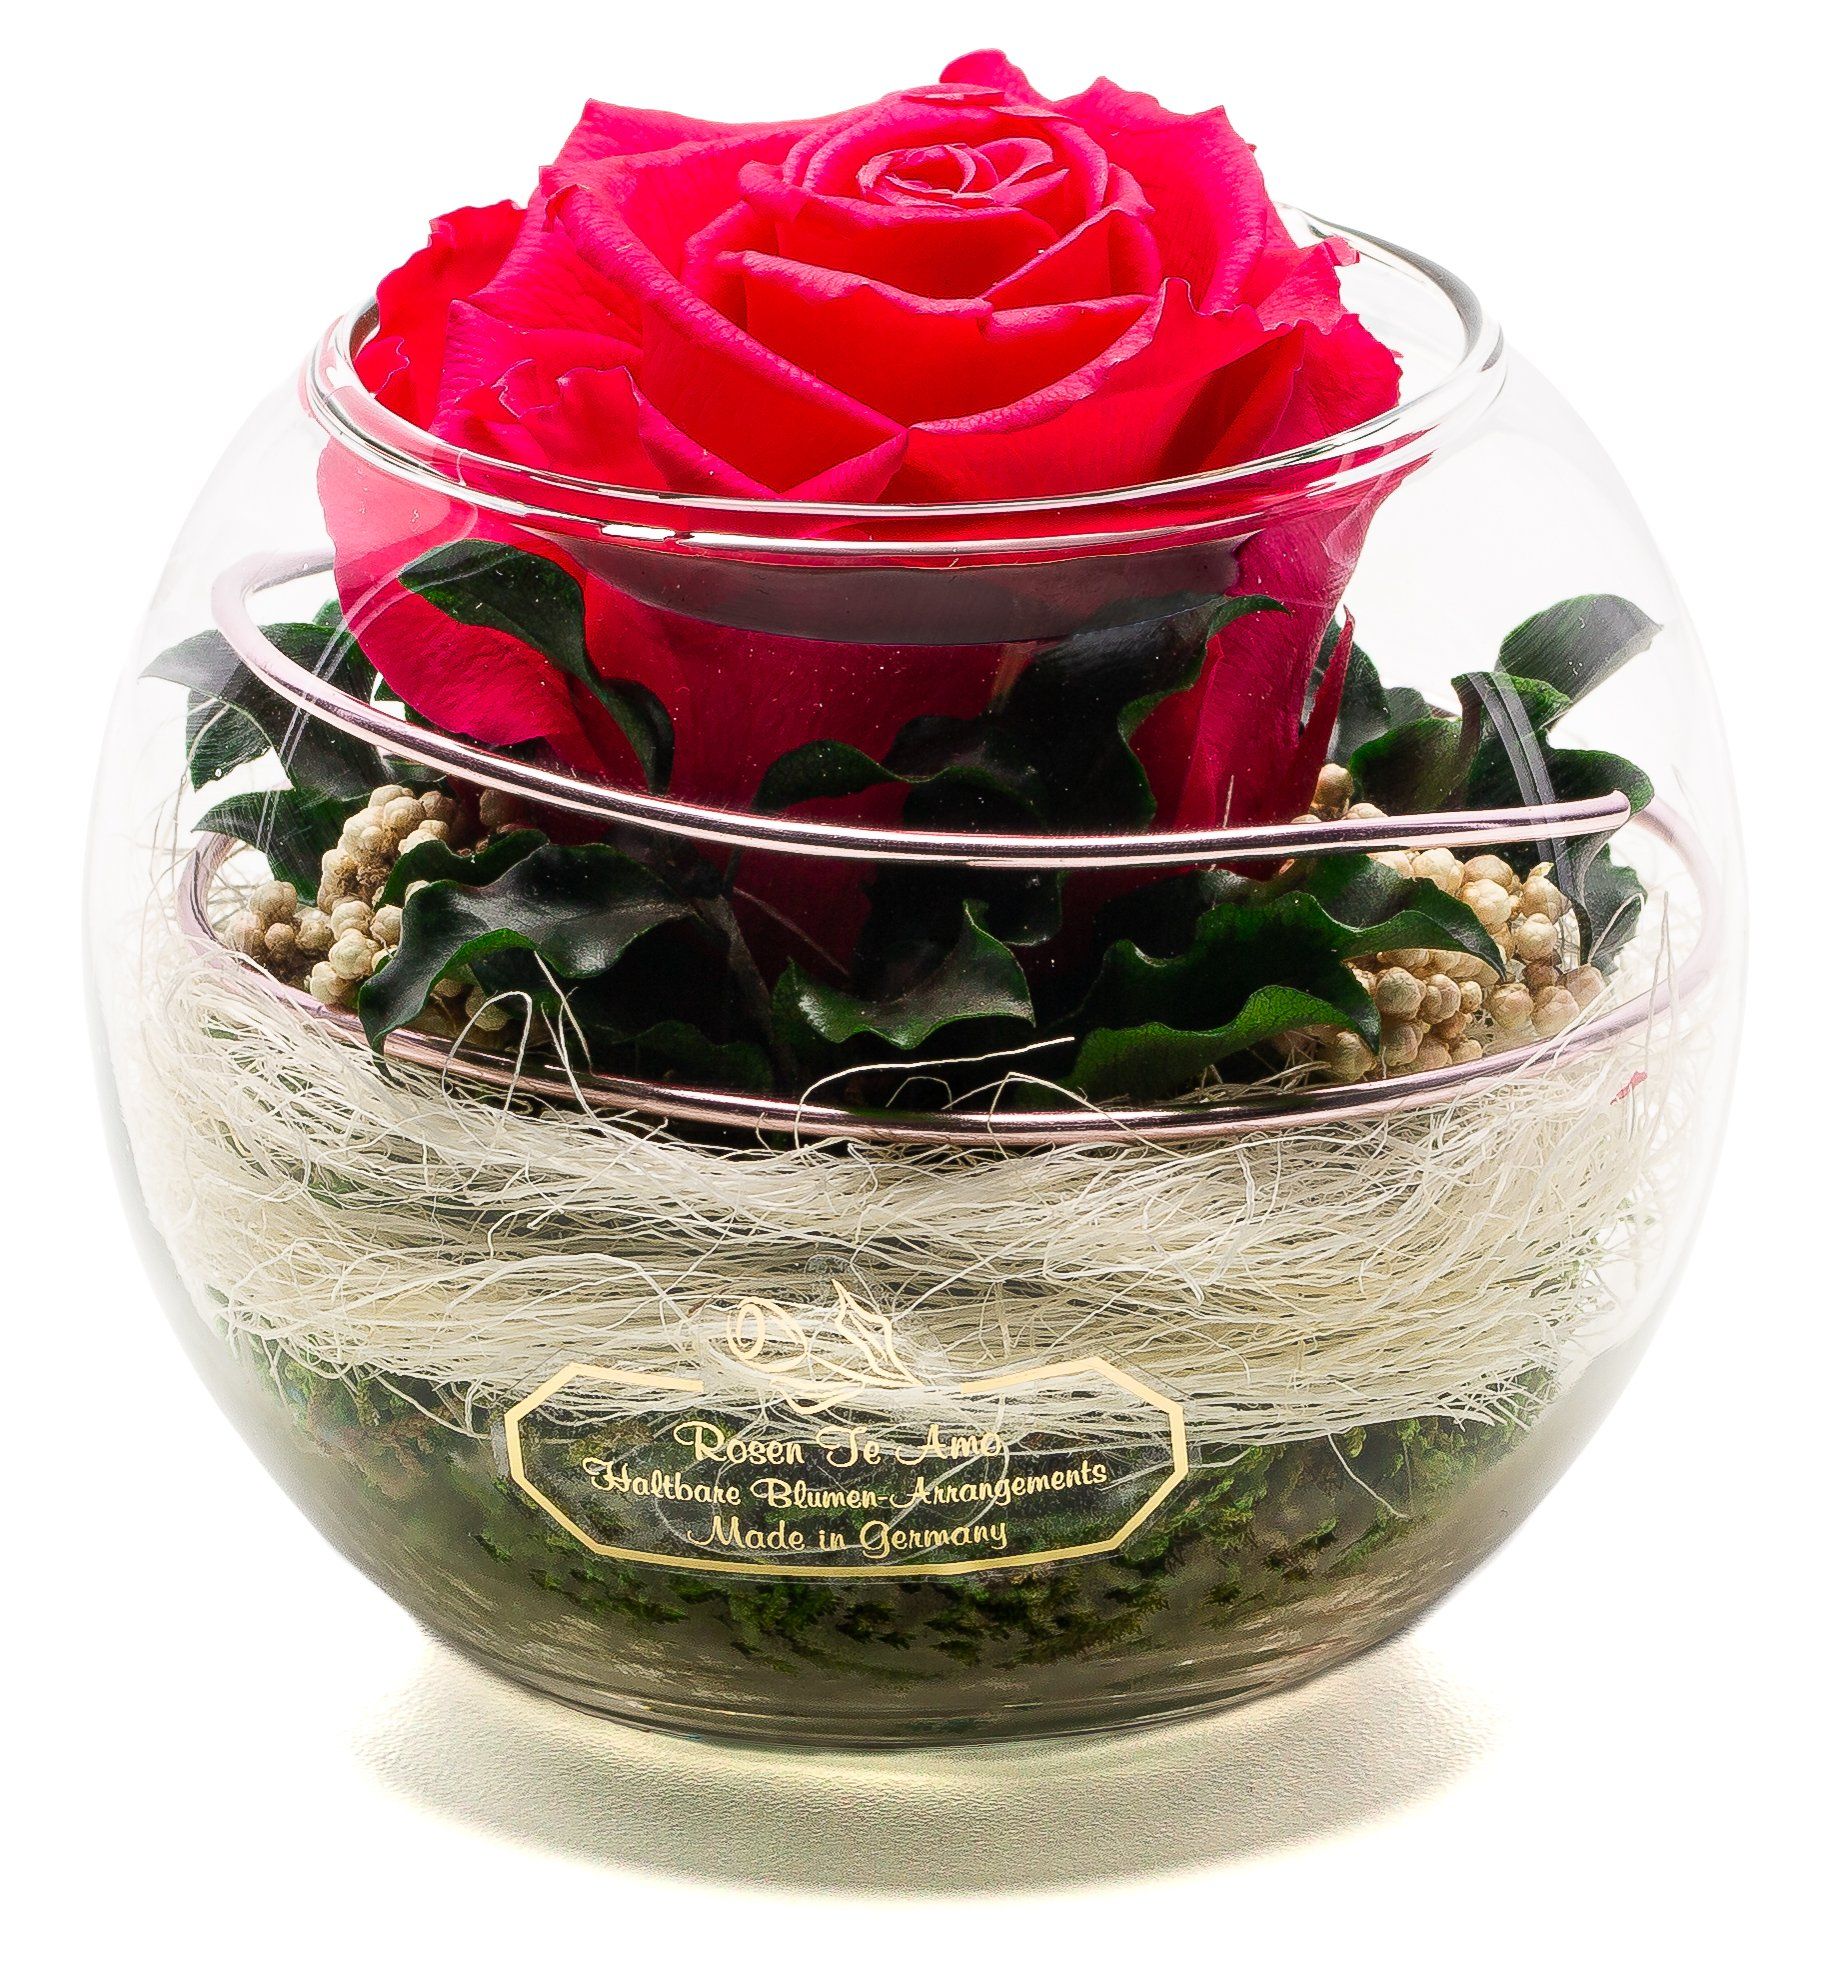 echte und haltbare Blumenarrangement,  infinity pink Rosengestecke, Rosen im Glas